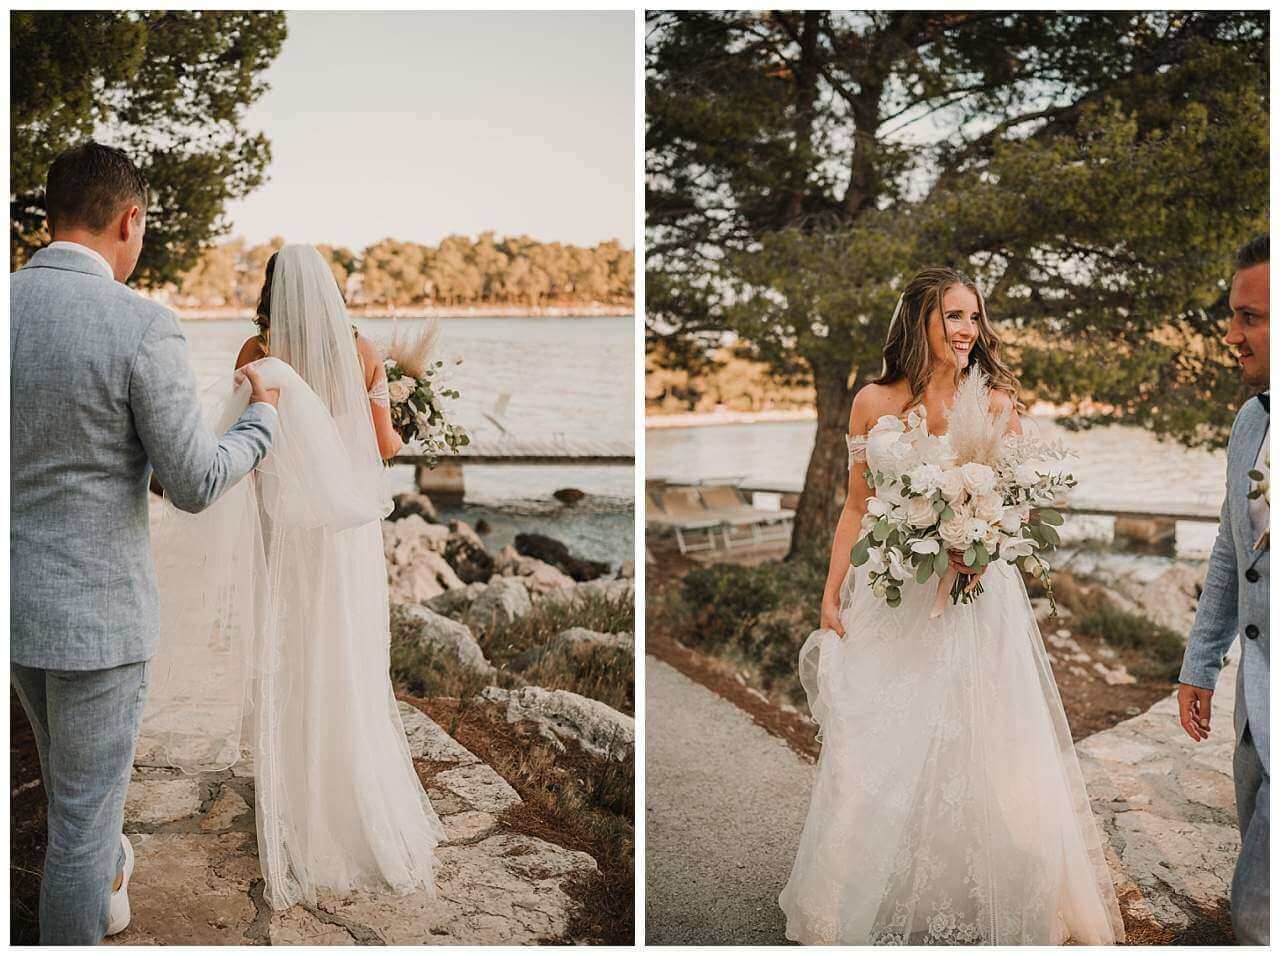 Fotoshooting am Wasser bei Hochzeit am Yachthafen in Kroatien